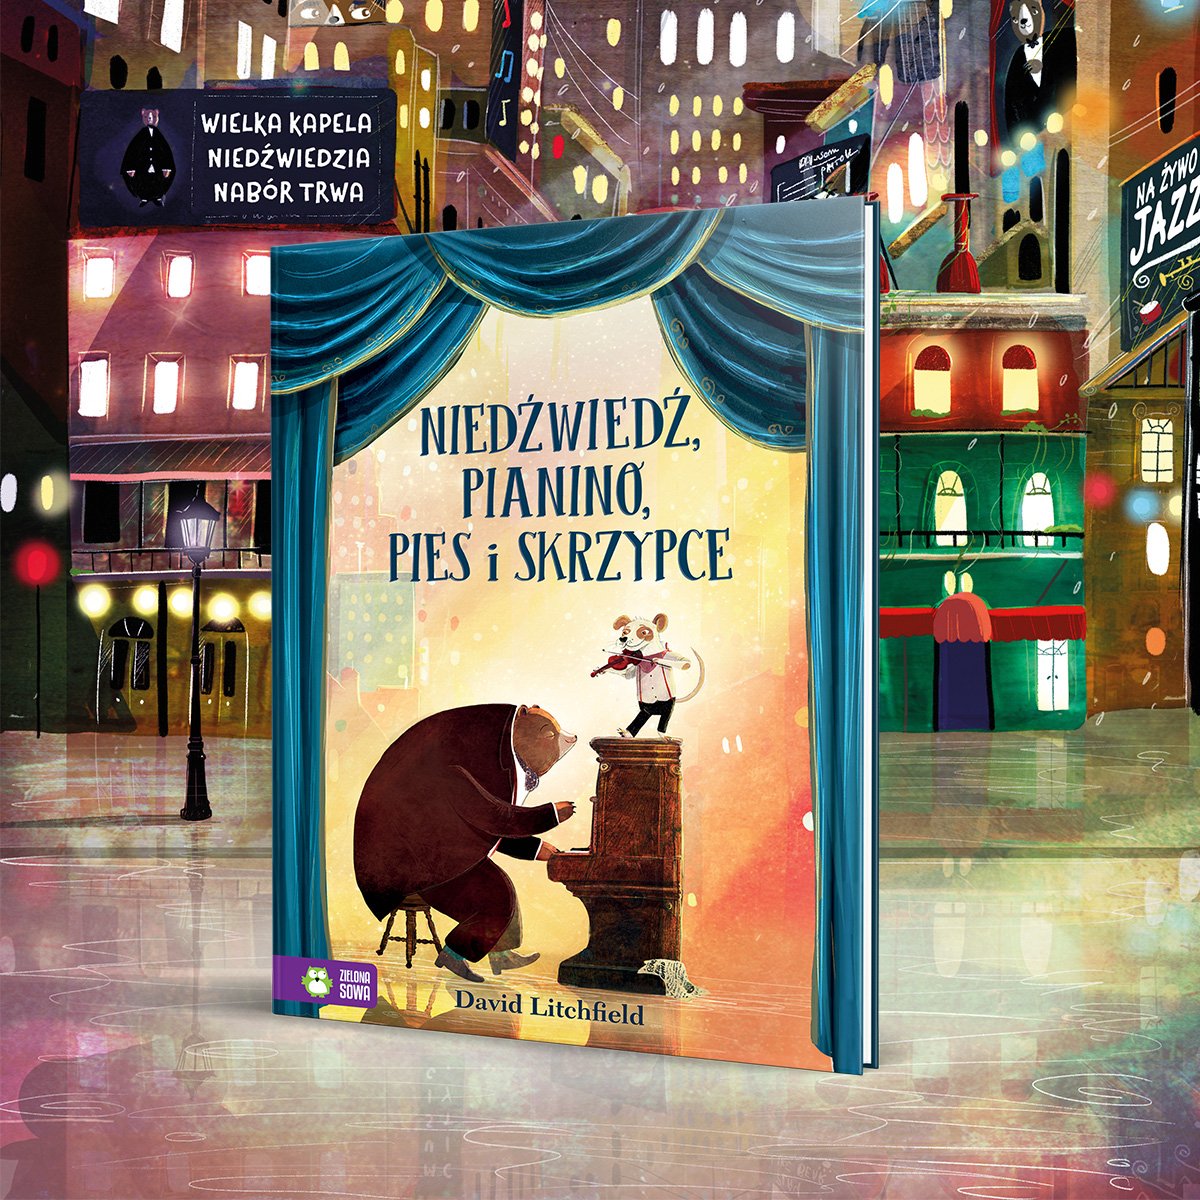 Niedźwiedź, pianino, pies i skrzypce - pięknie ilustrowana książka o przyjaźni